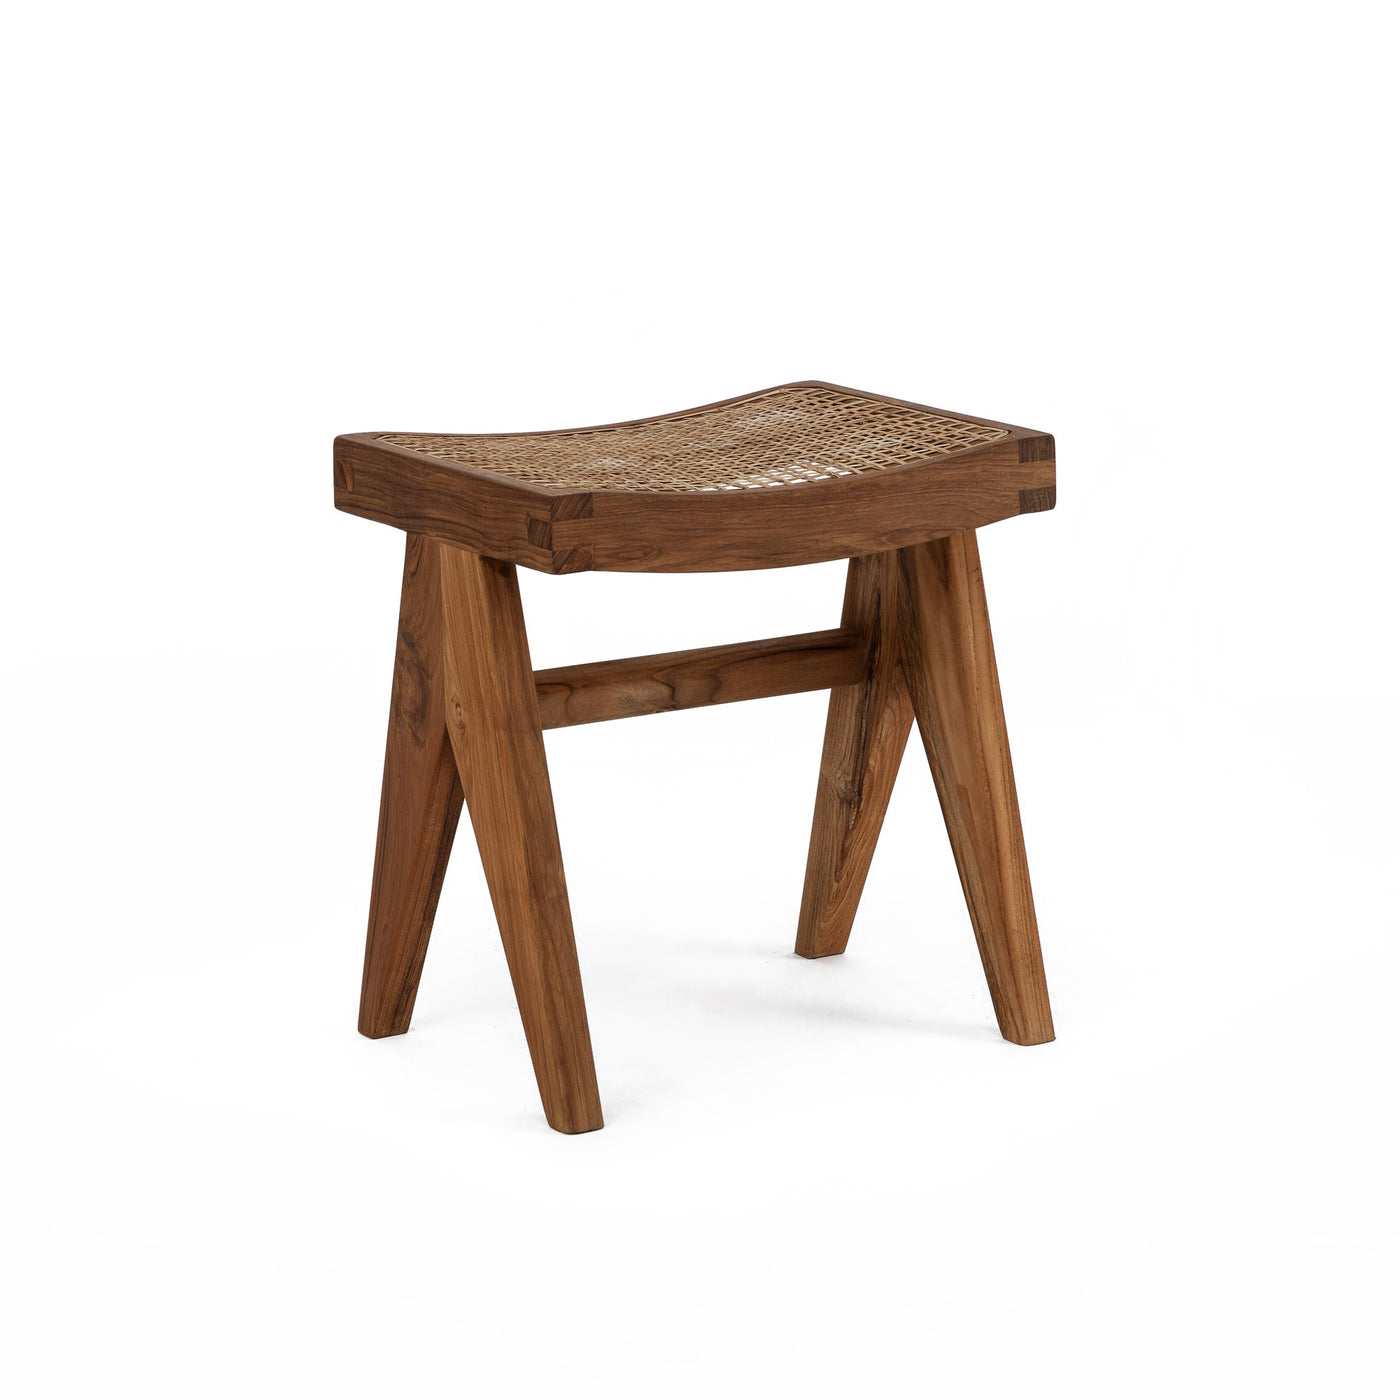 Pierre Jaenneret, židle podle pierre jeanneret, design 50. let, minimaistická židle, Srelle, Židle do minimalistických interiérů, luxusní židle, Pierre židle, pierre stolička